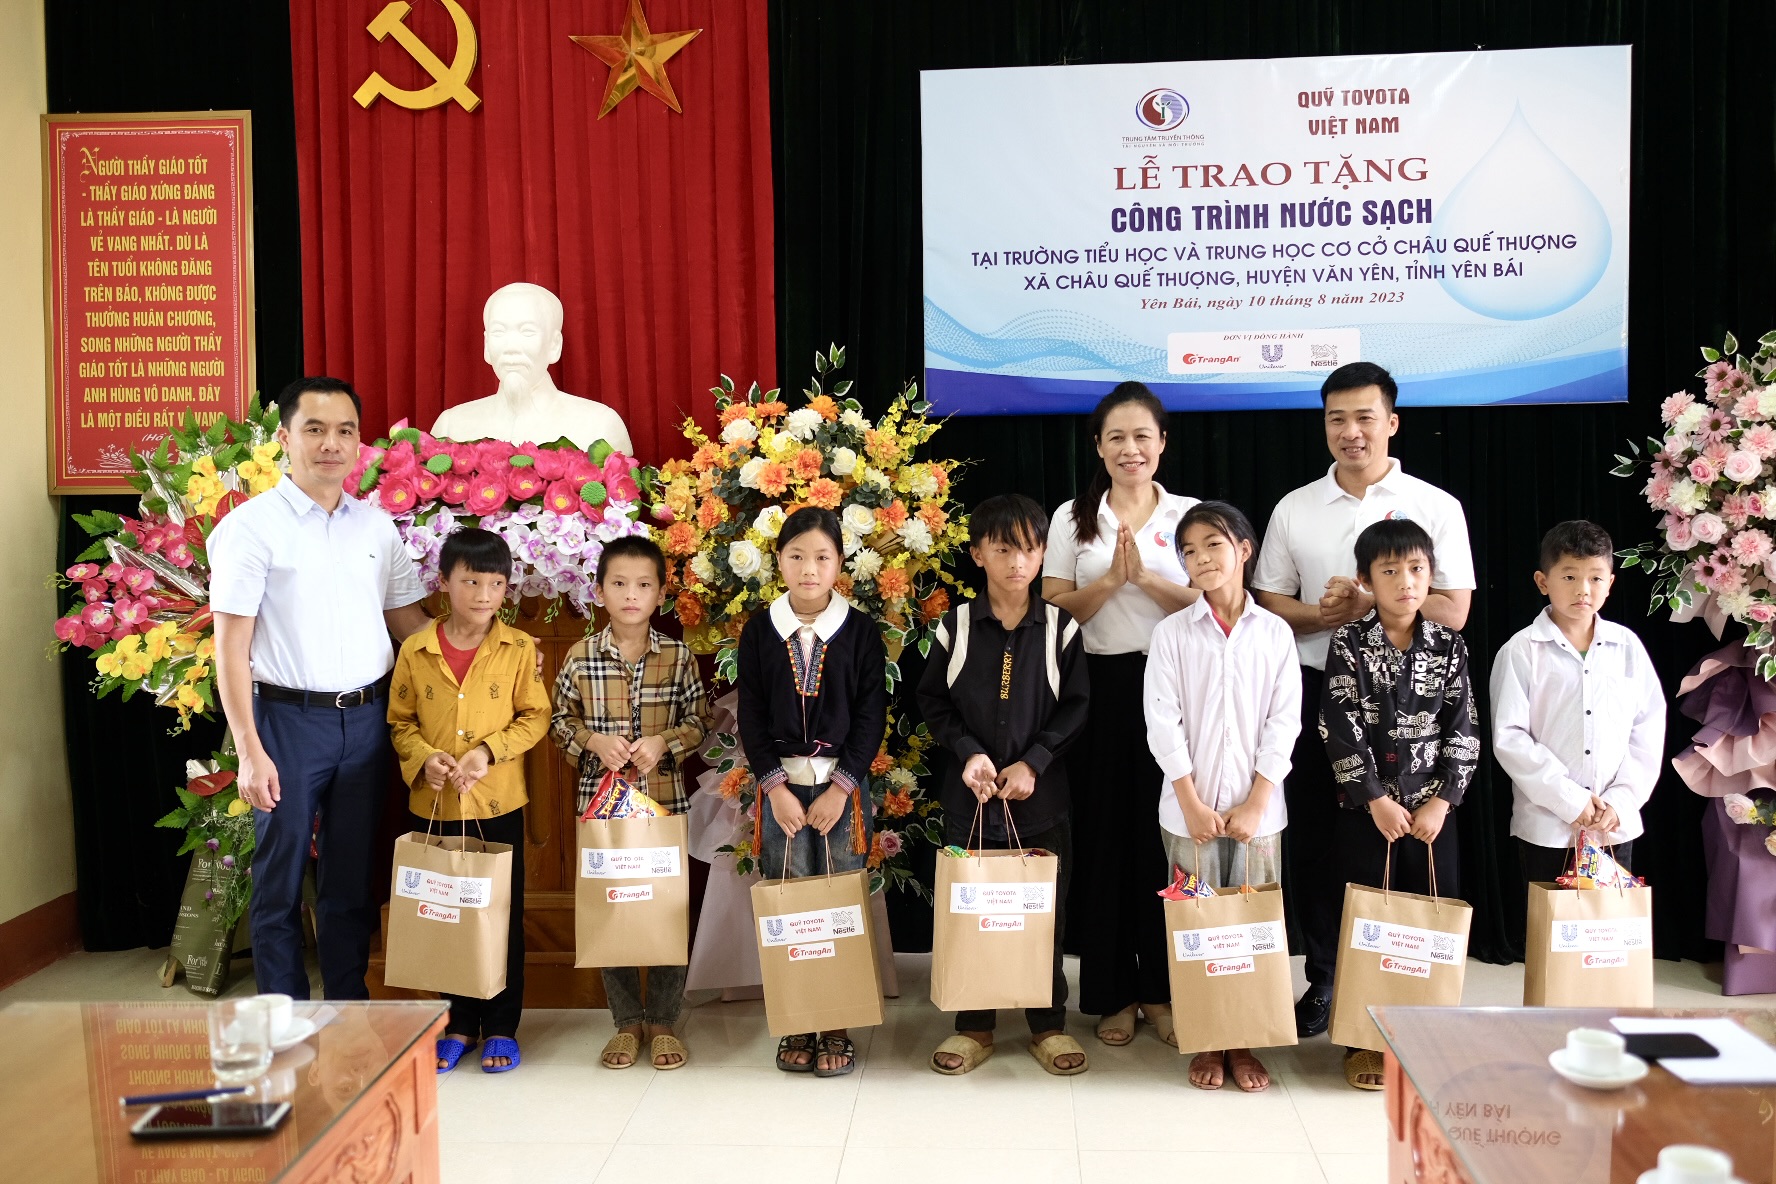 Quỹ Toyota Việt Nam bàn giao công trình nước sạch cho Trường Tiểu học - Trung học cơ sở Châu Quế Thượng tại tỉnh Yên Bái